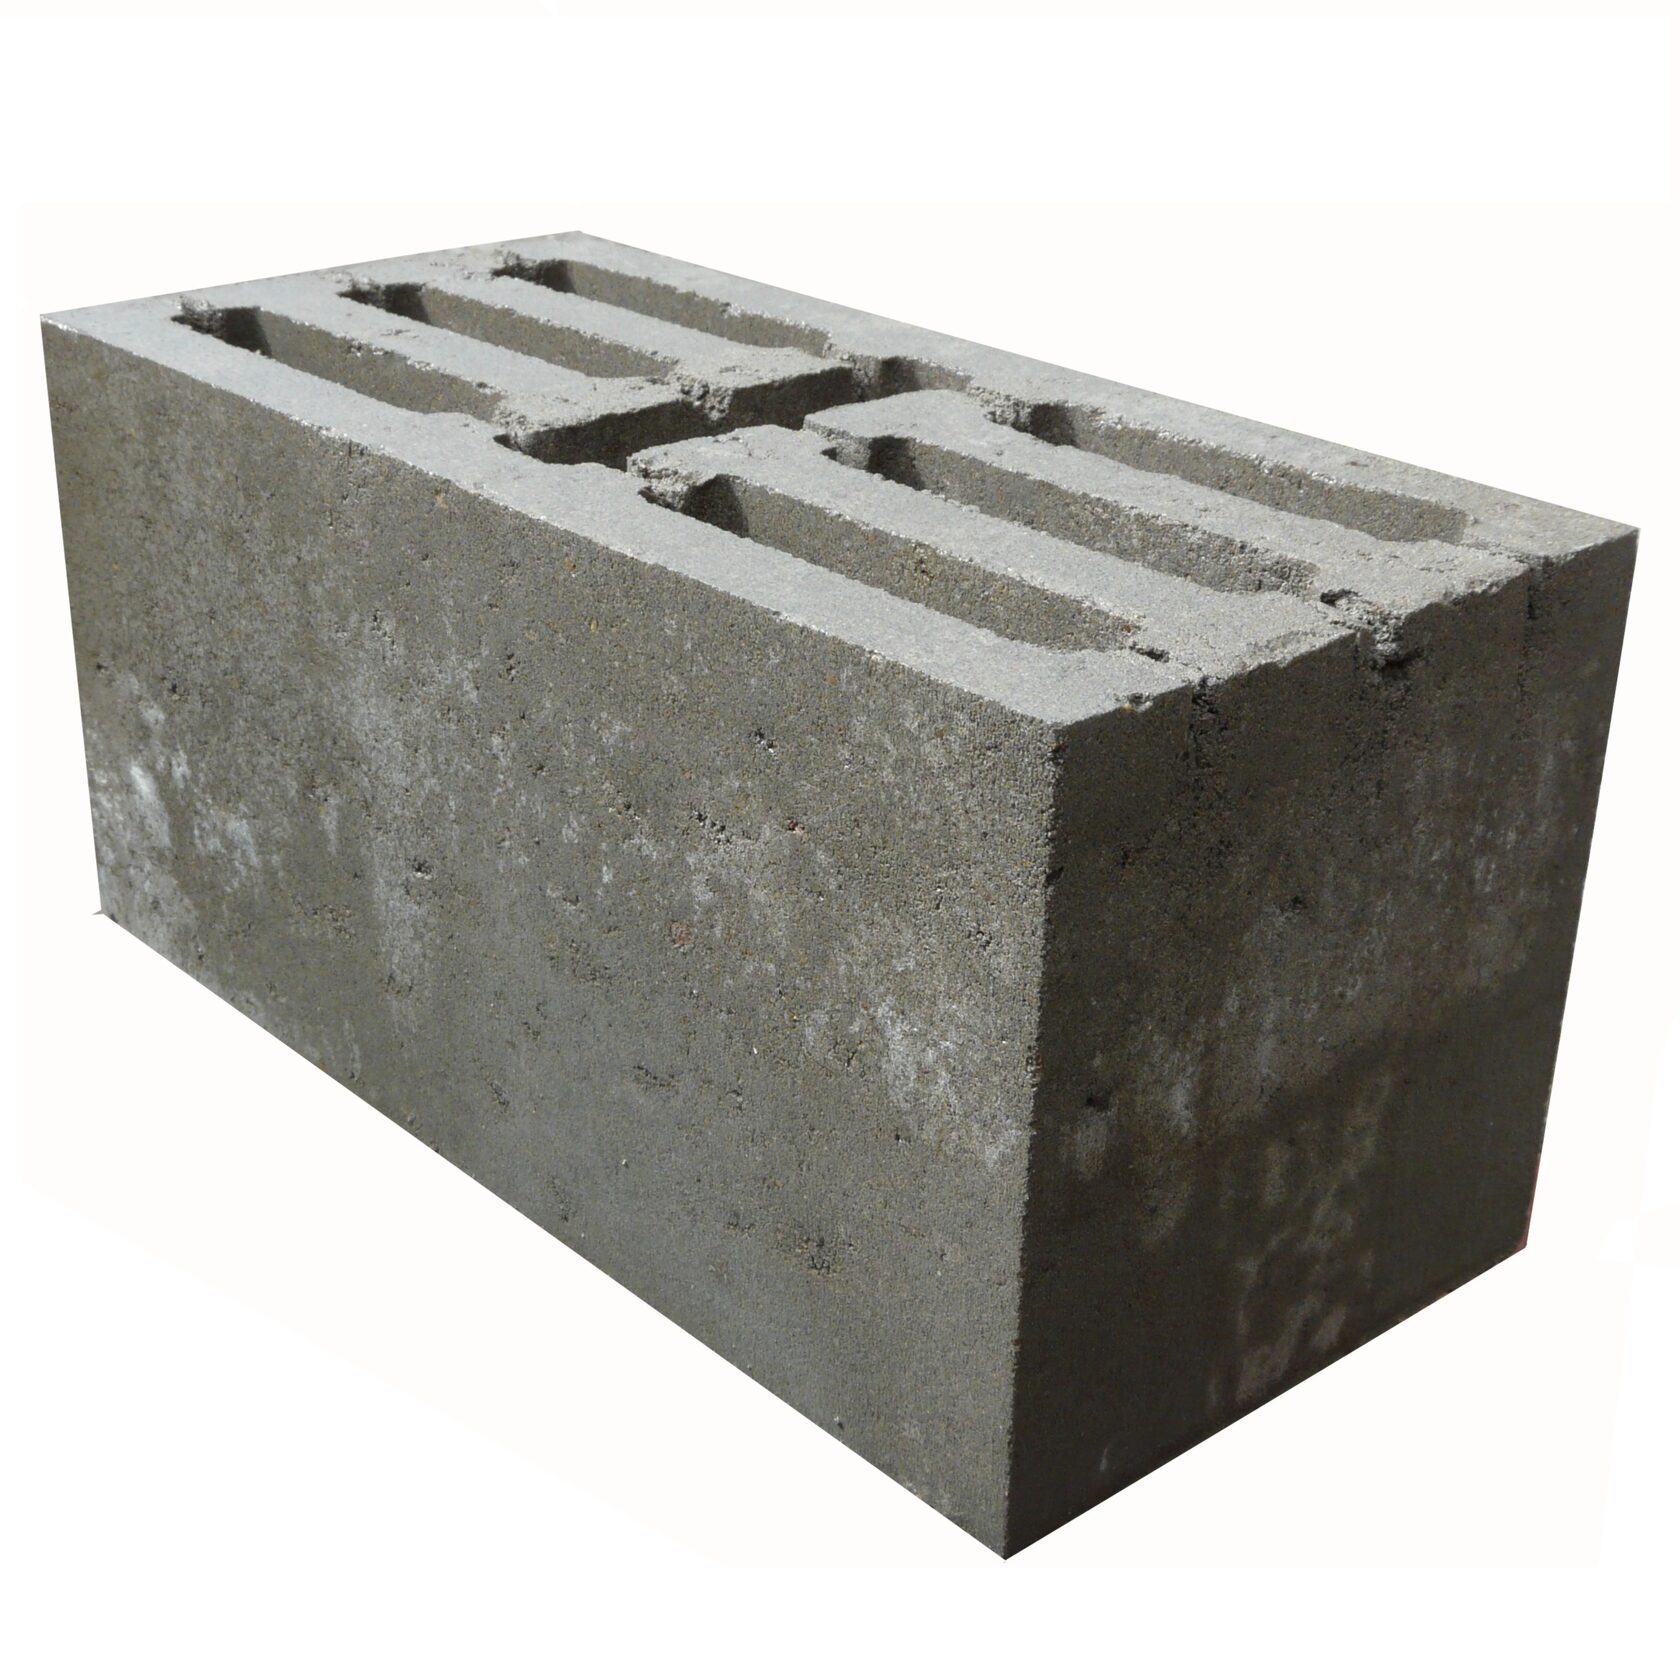 Блок бетонный 20 20 40. Блок керамзитобетонный 4-х щелевой 390х190х188 мм. Блок пескобетонный 20х20х40см. Бетонный блок 390х190х190. Керамзитобетонный стеновой блок 4-х щелевой (190 мм).